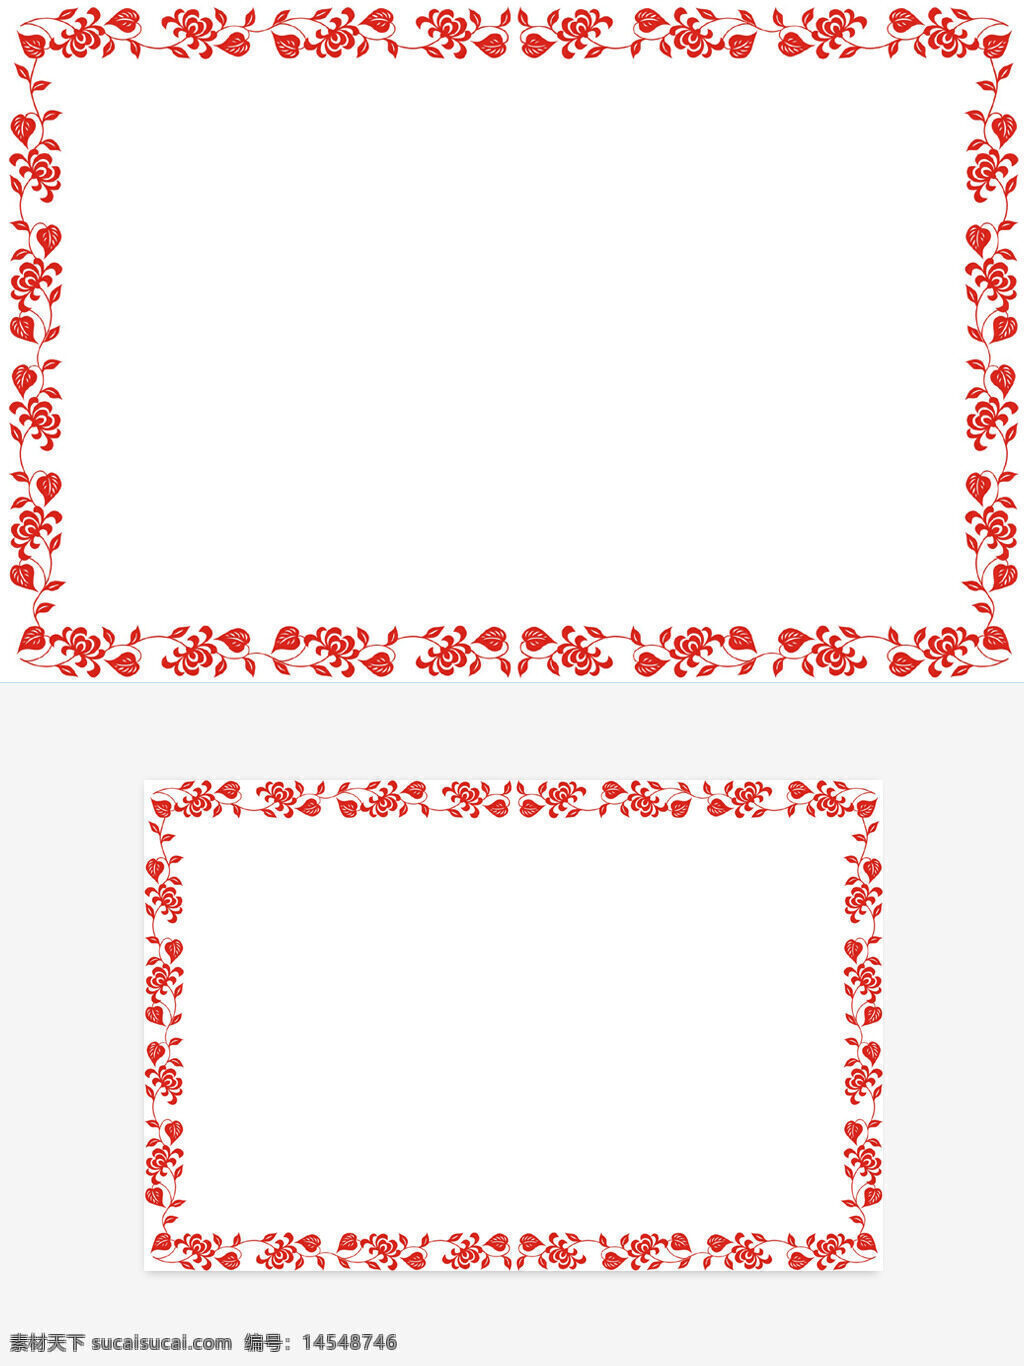 中国风 红色 剪纸风 花朵 叶子 边框 矢量图 可变色 可变尺寸